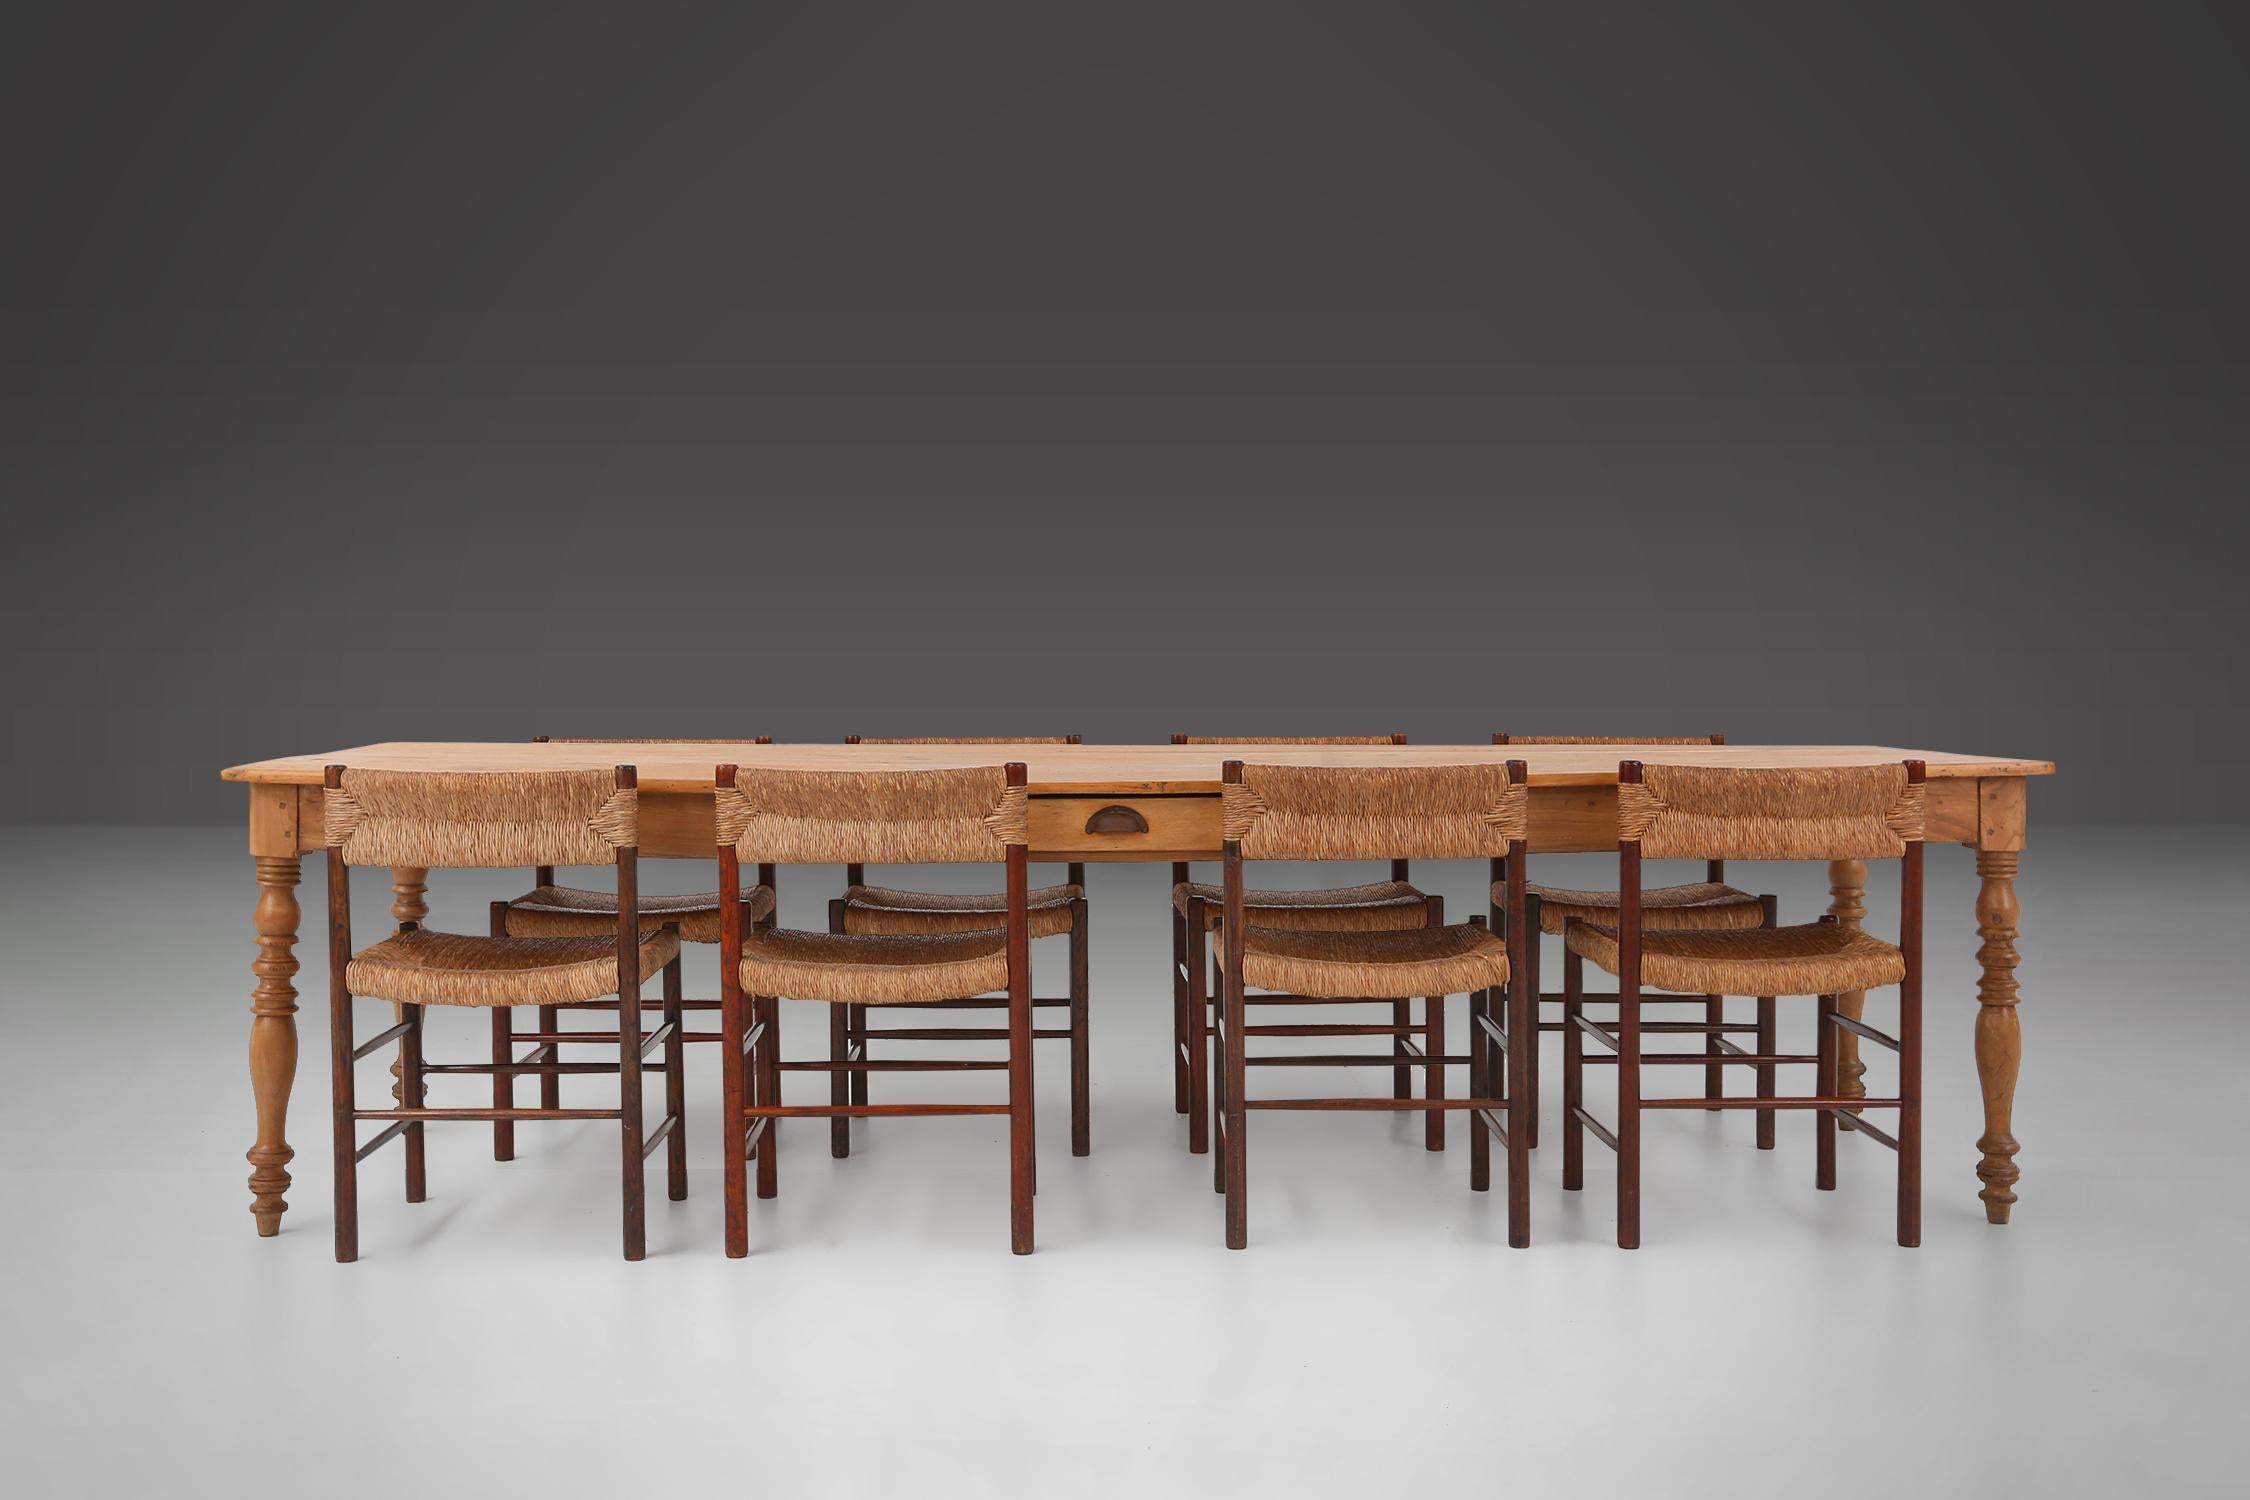 Frankreich / 1850 / Bauernhoftisch / Kiefernholz / rustikal

Großer, stattlicher Bauernhoftisch aus französischer Kiefer, handgefertigt um 1870. Dieser robuste Esstisch hat auf einer Seite eine Schublade und steht auf vier elegant gedrechselten